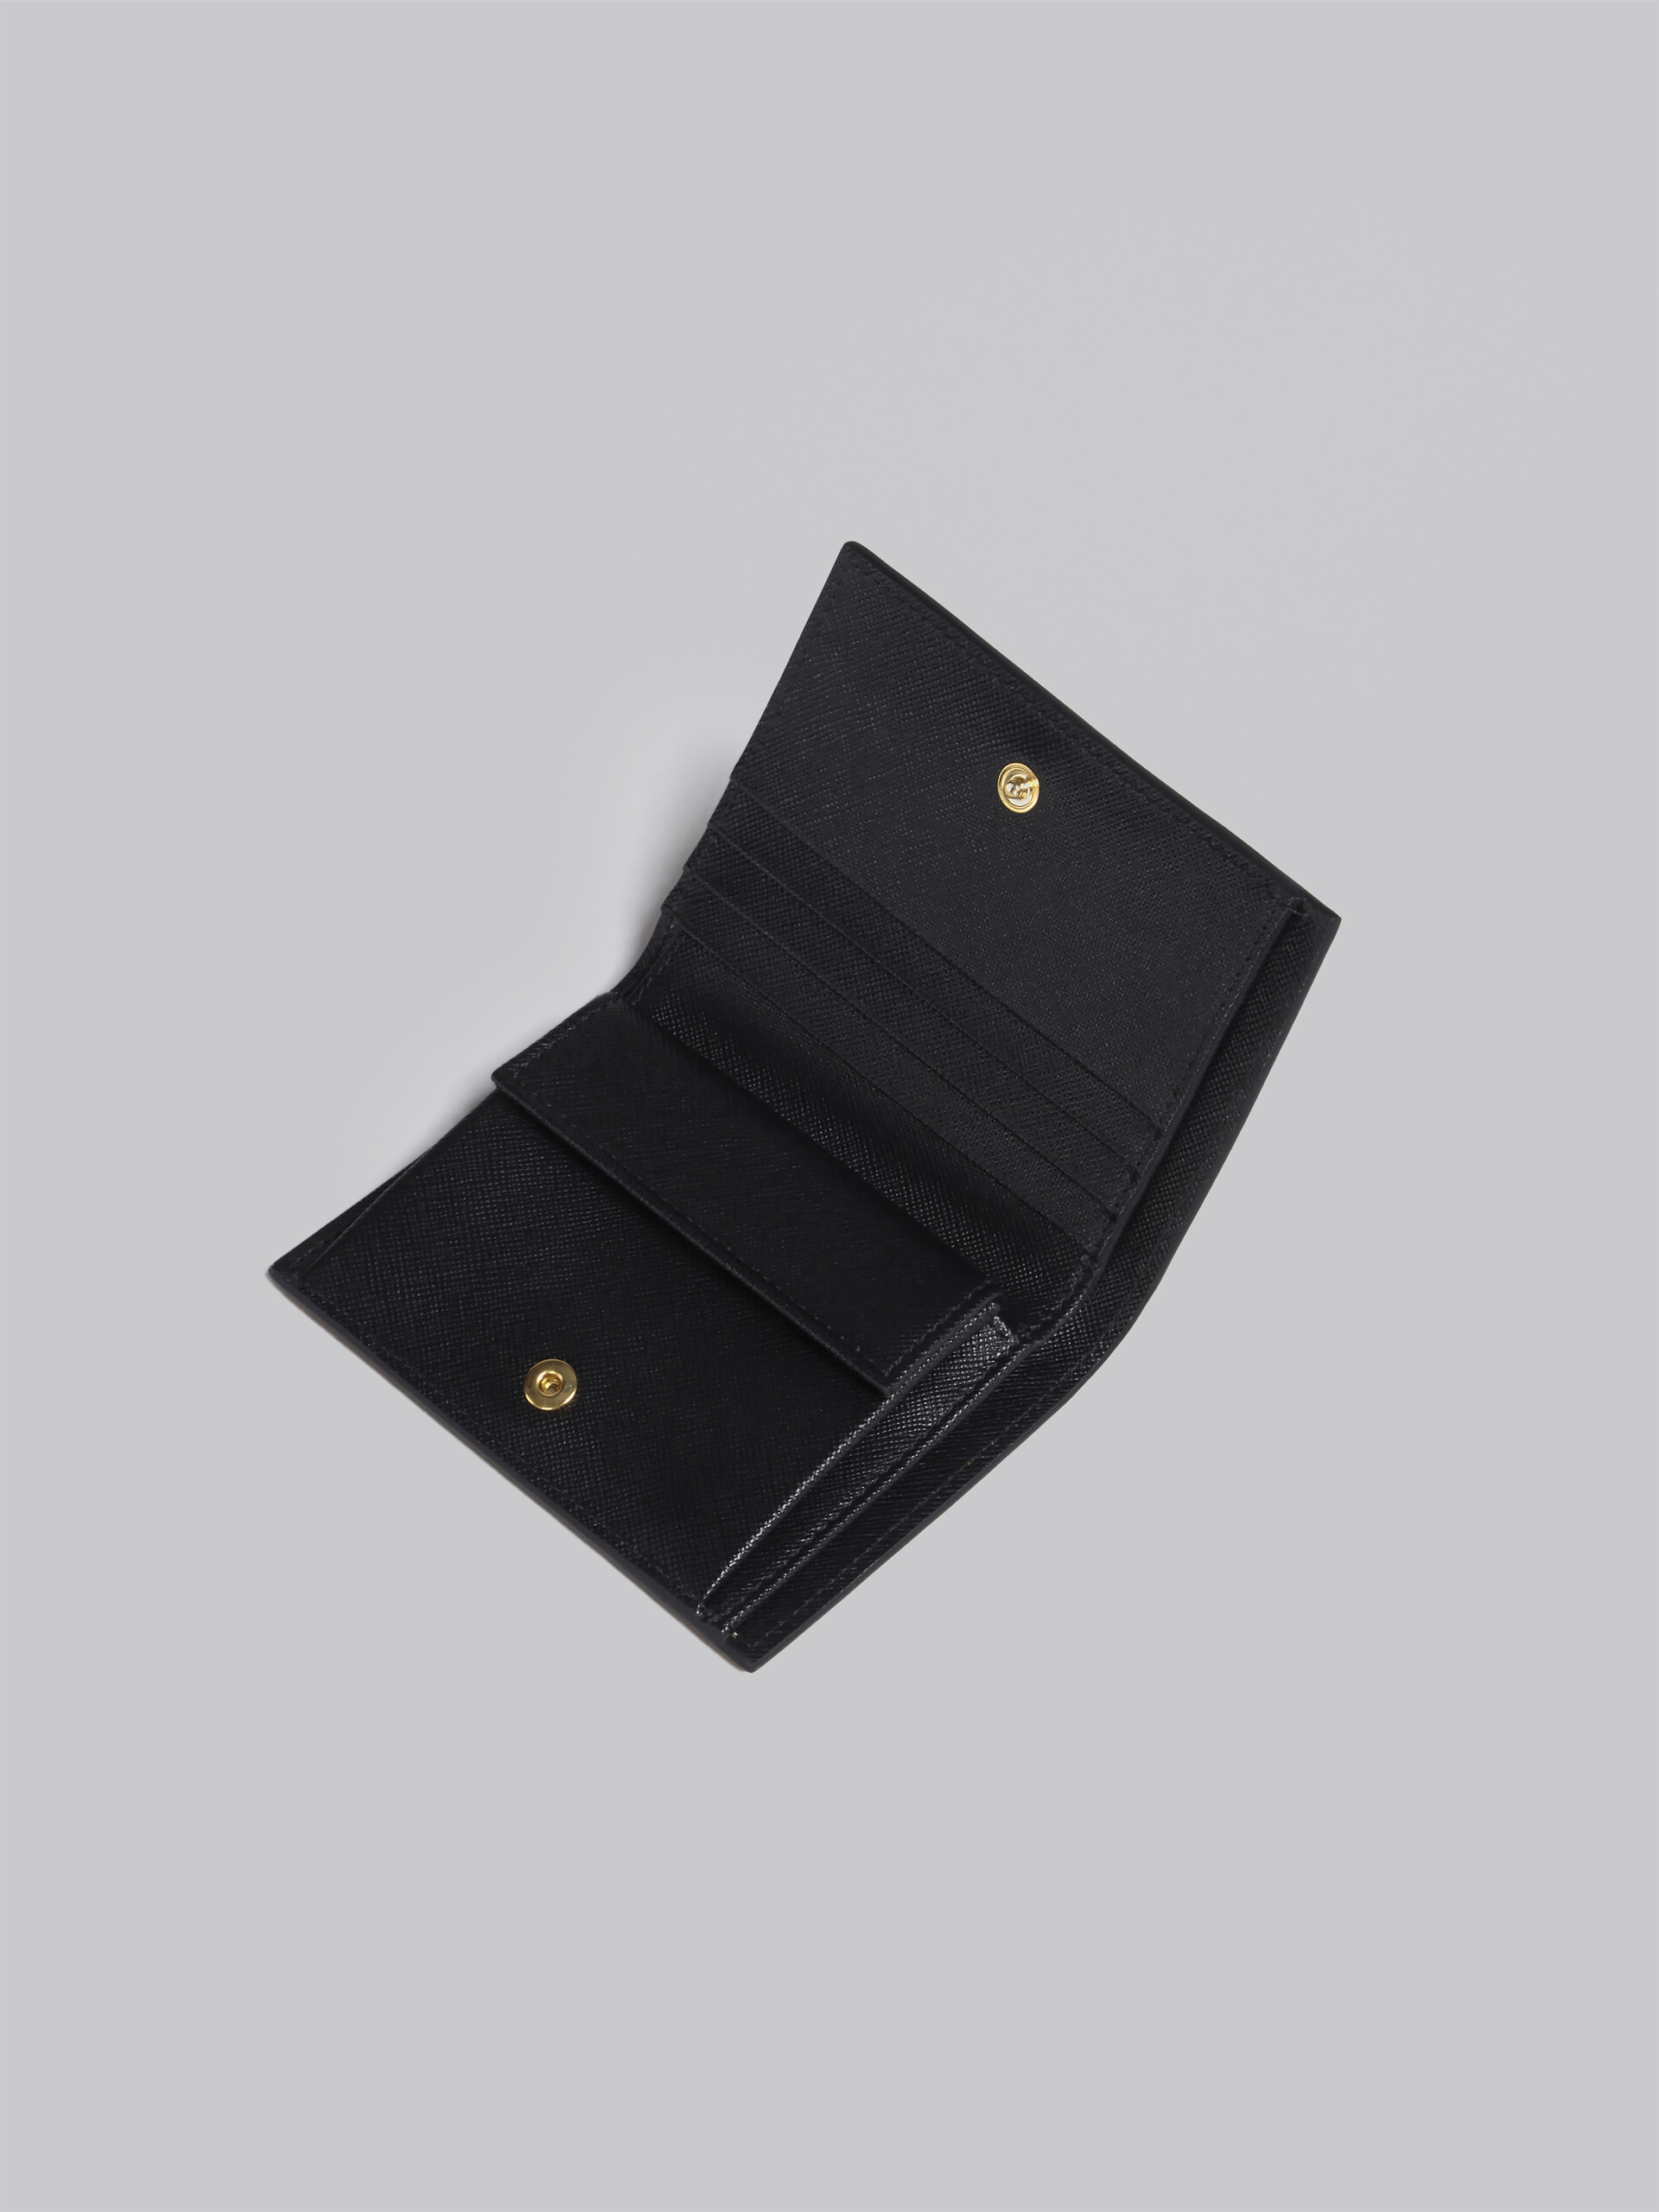 Portafoglio bi-fold in saffiano marrone lilla e nero - Portafogli - Image 4